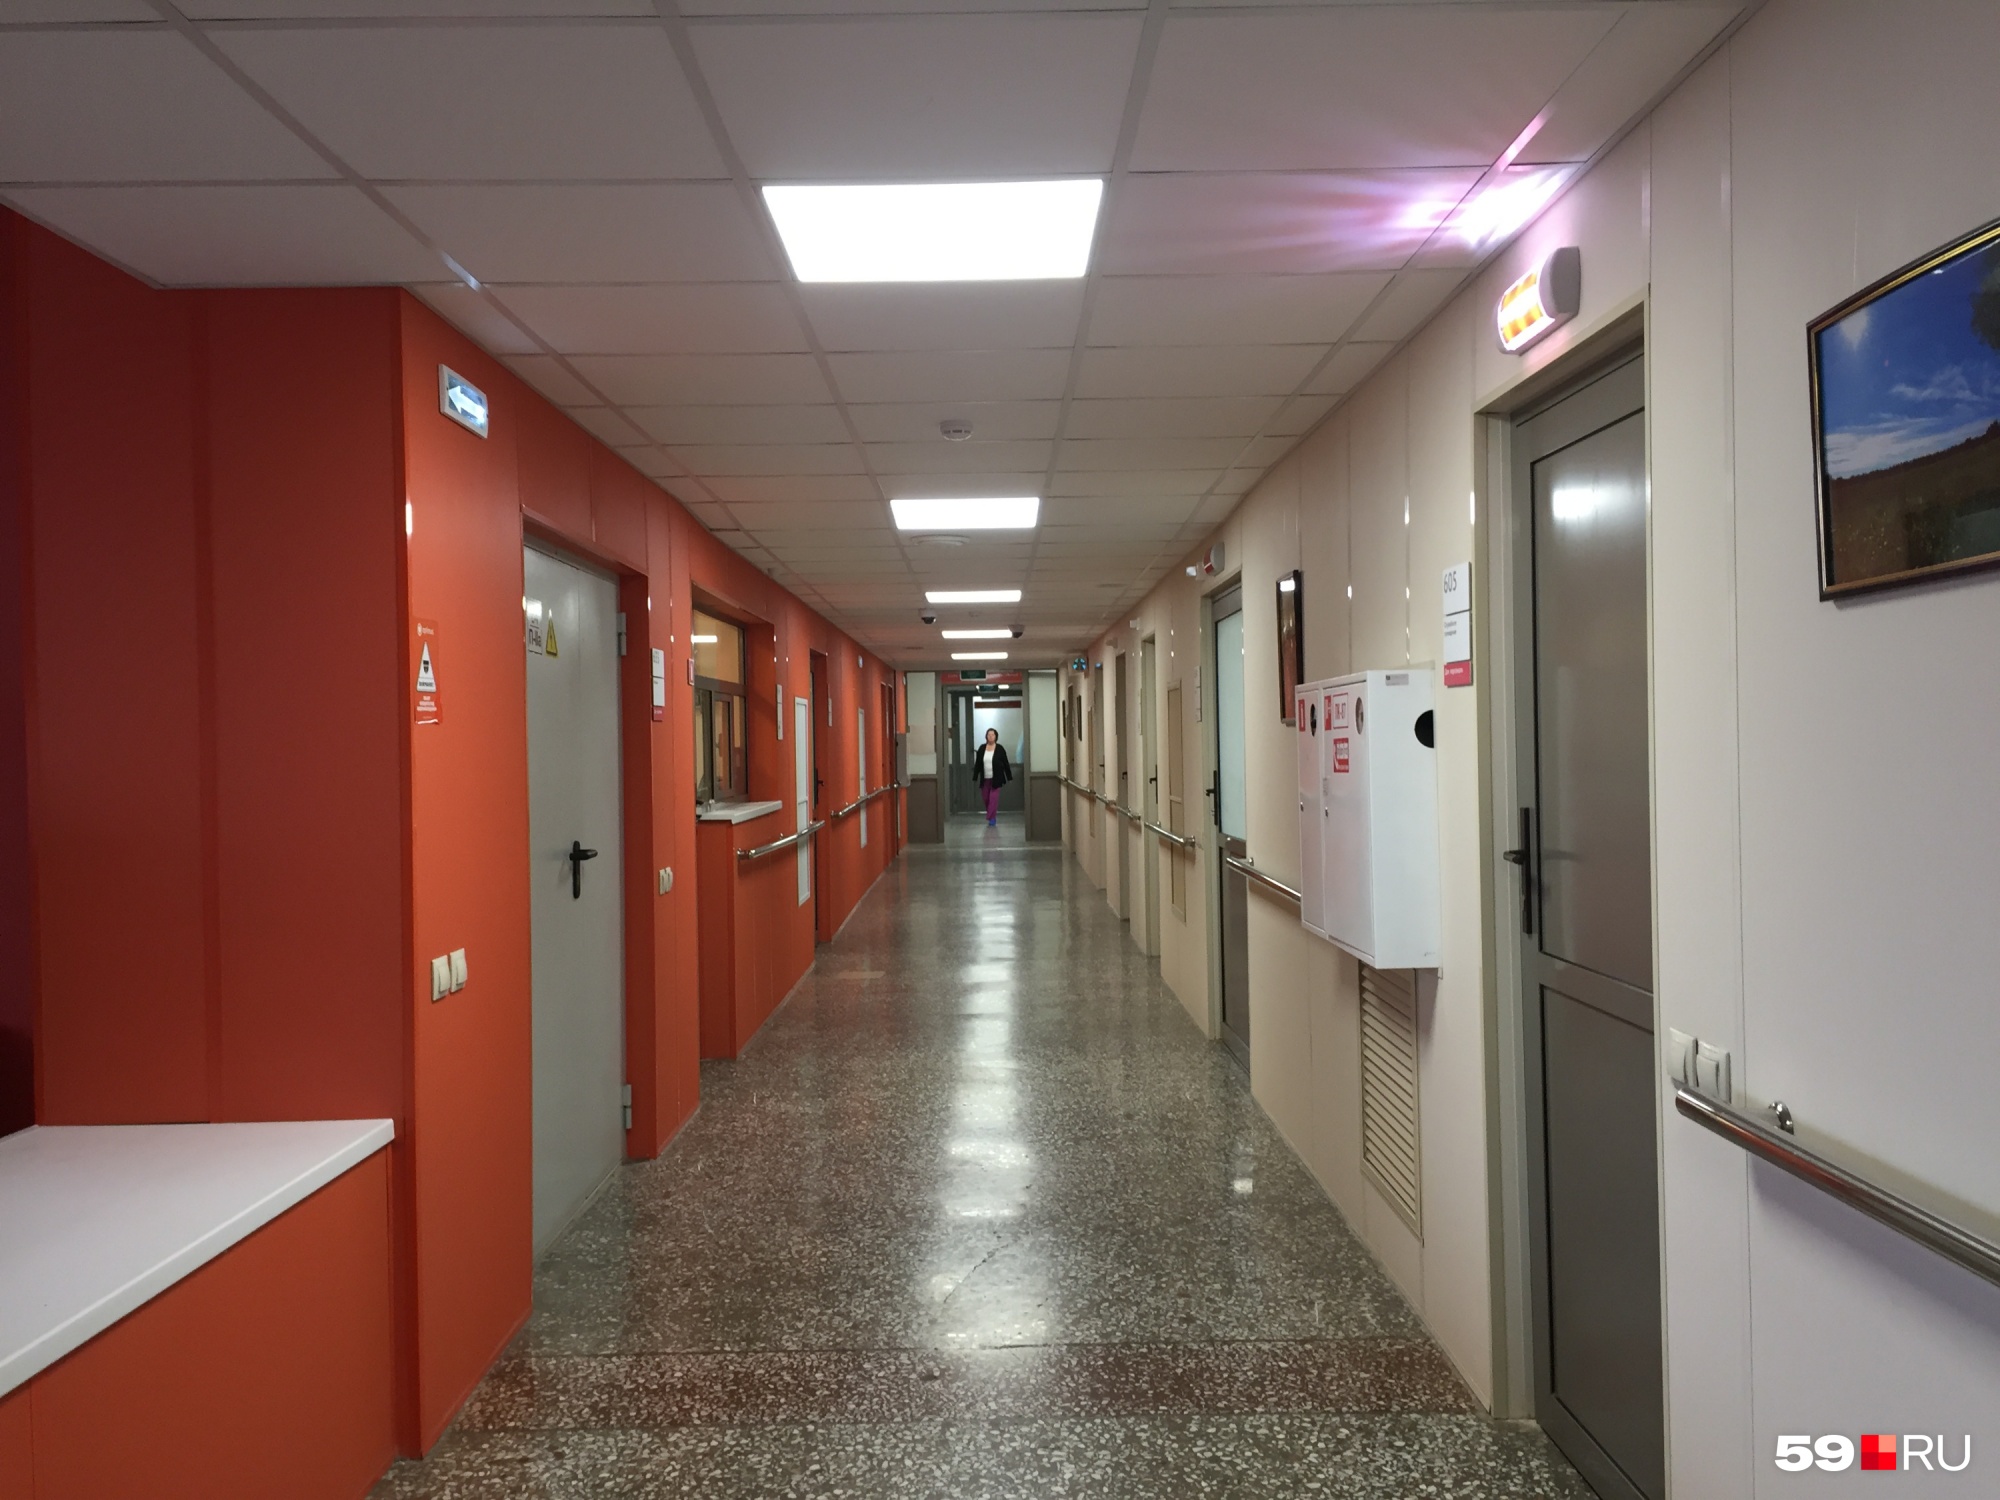 Практически все коридоры в ГКБ № 4 выглядят примерно так. На стенах специальные панели, они не воспламеняются